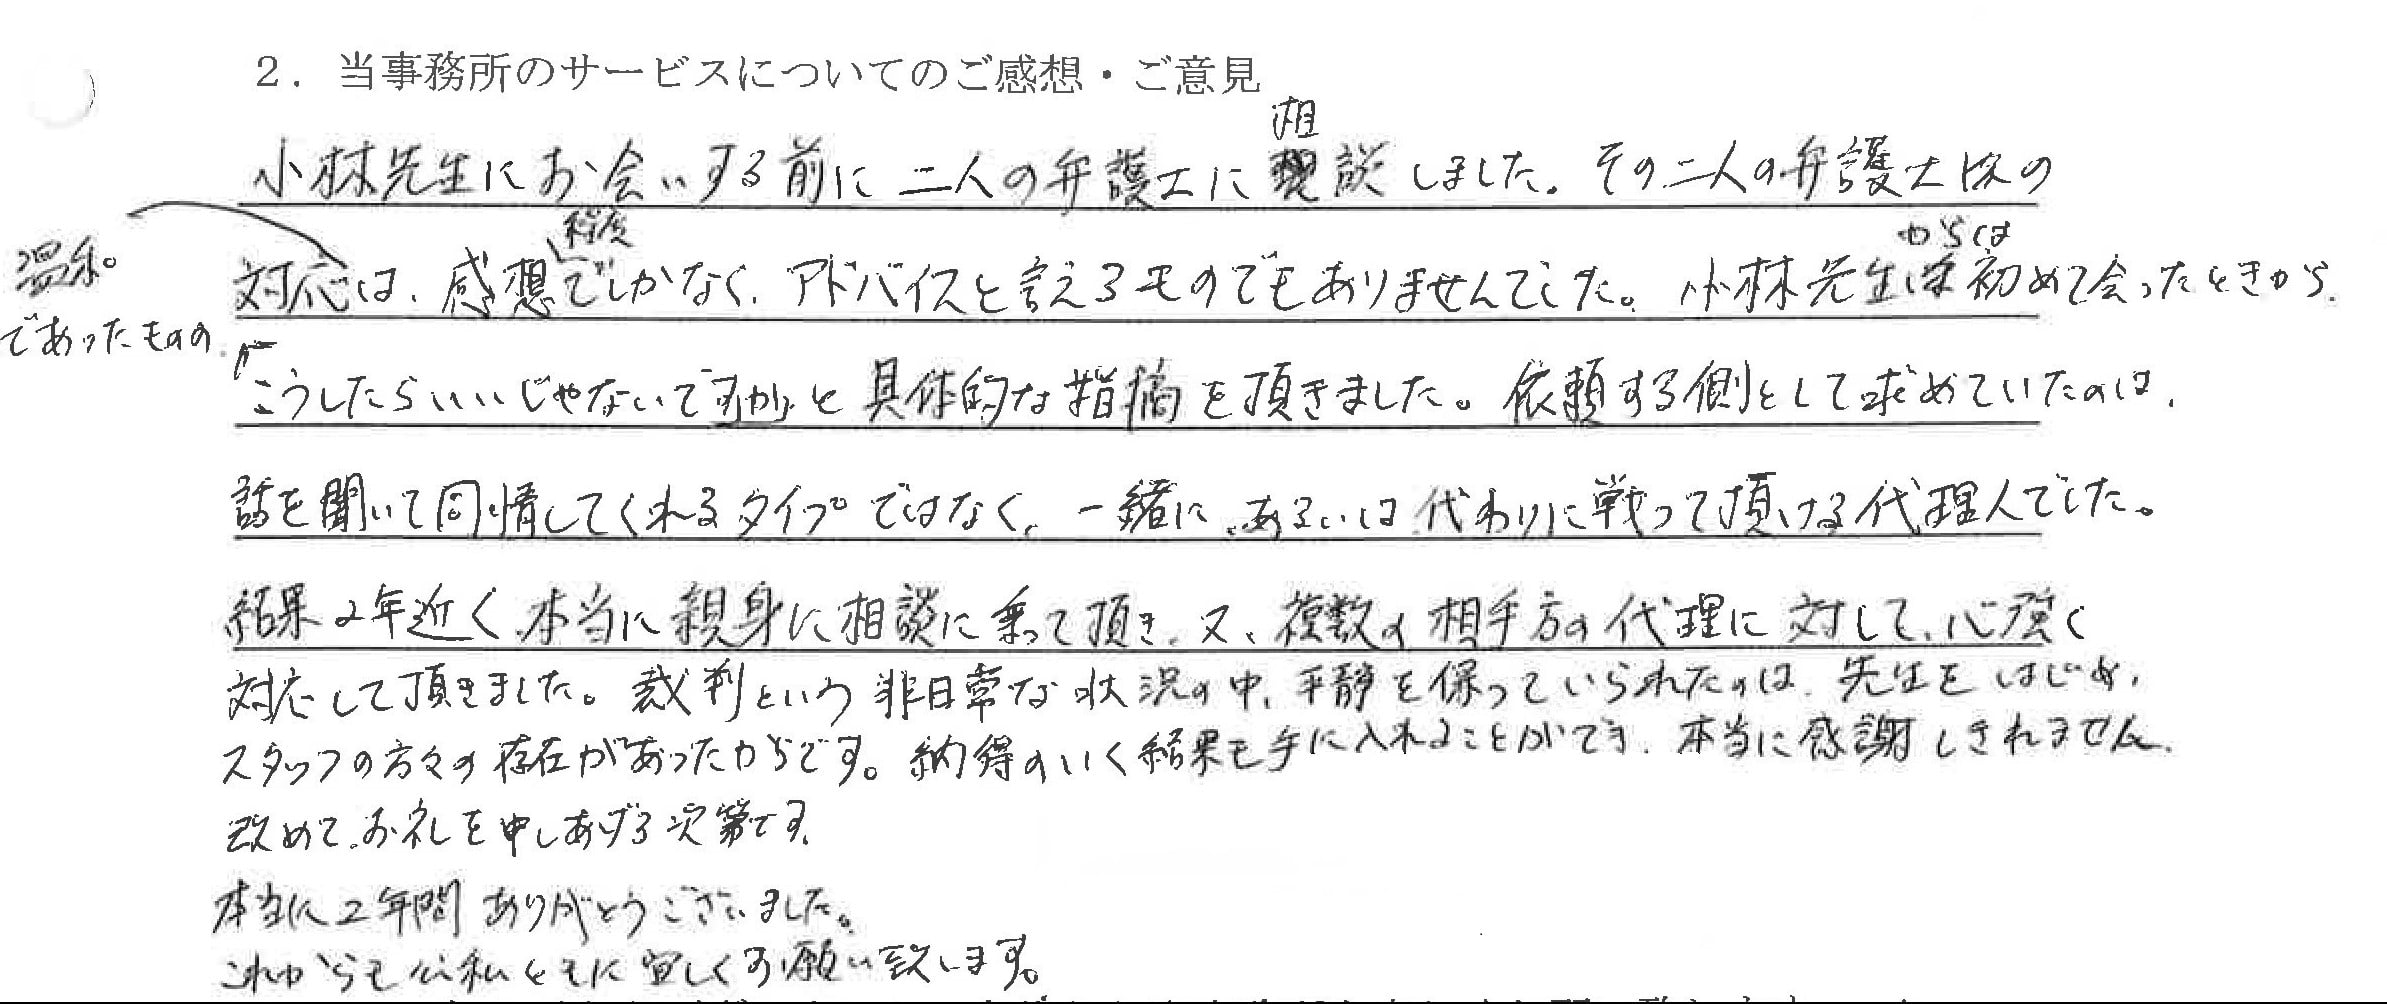 愛知県清須市男性示談交渉による不倫慰謝料獲得事例 : 